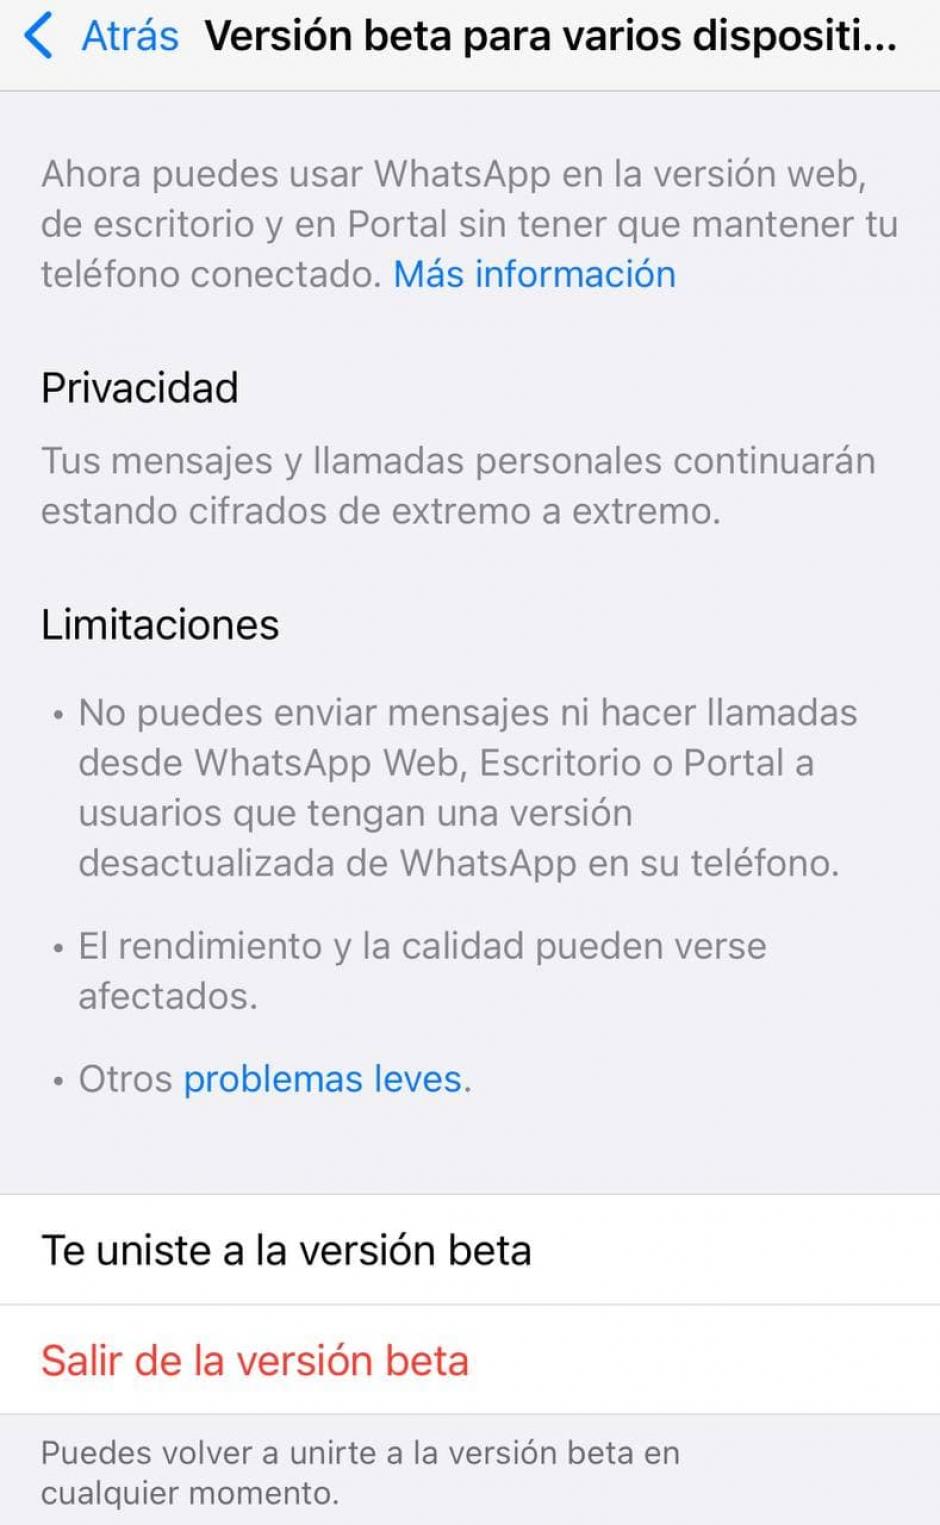 WhatsApp advierte de las limitaciones del servicio